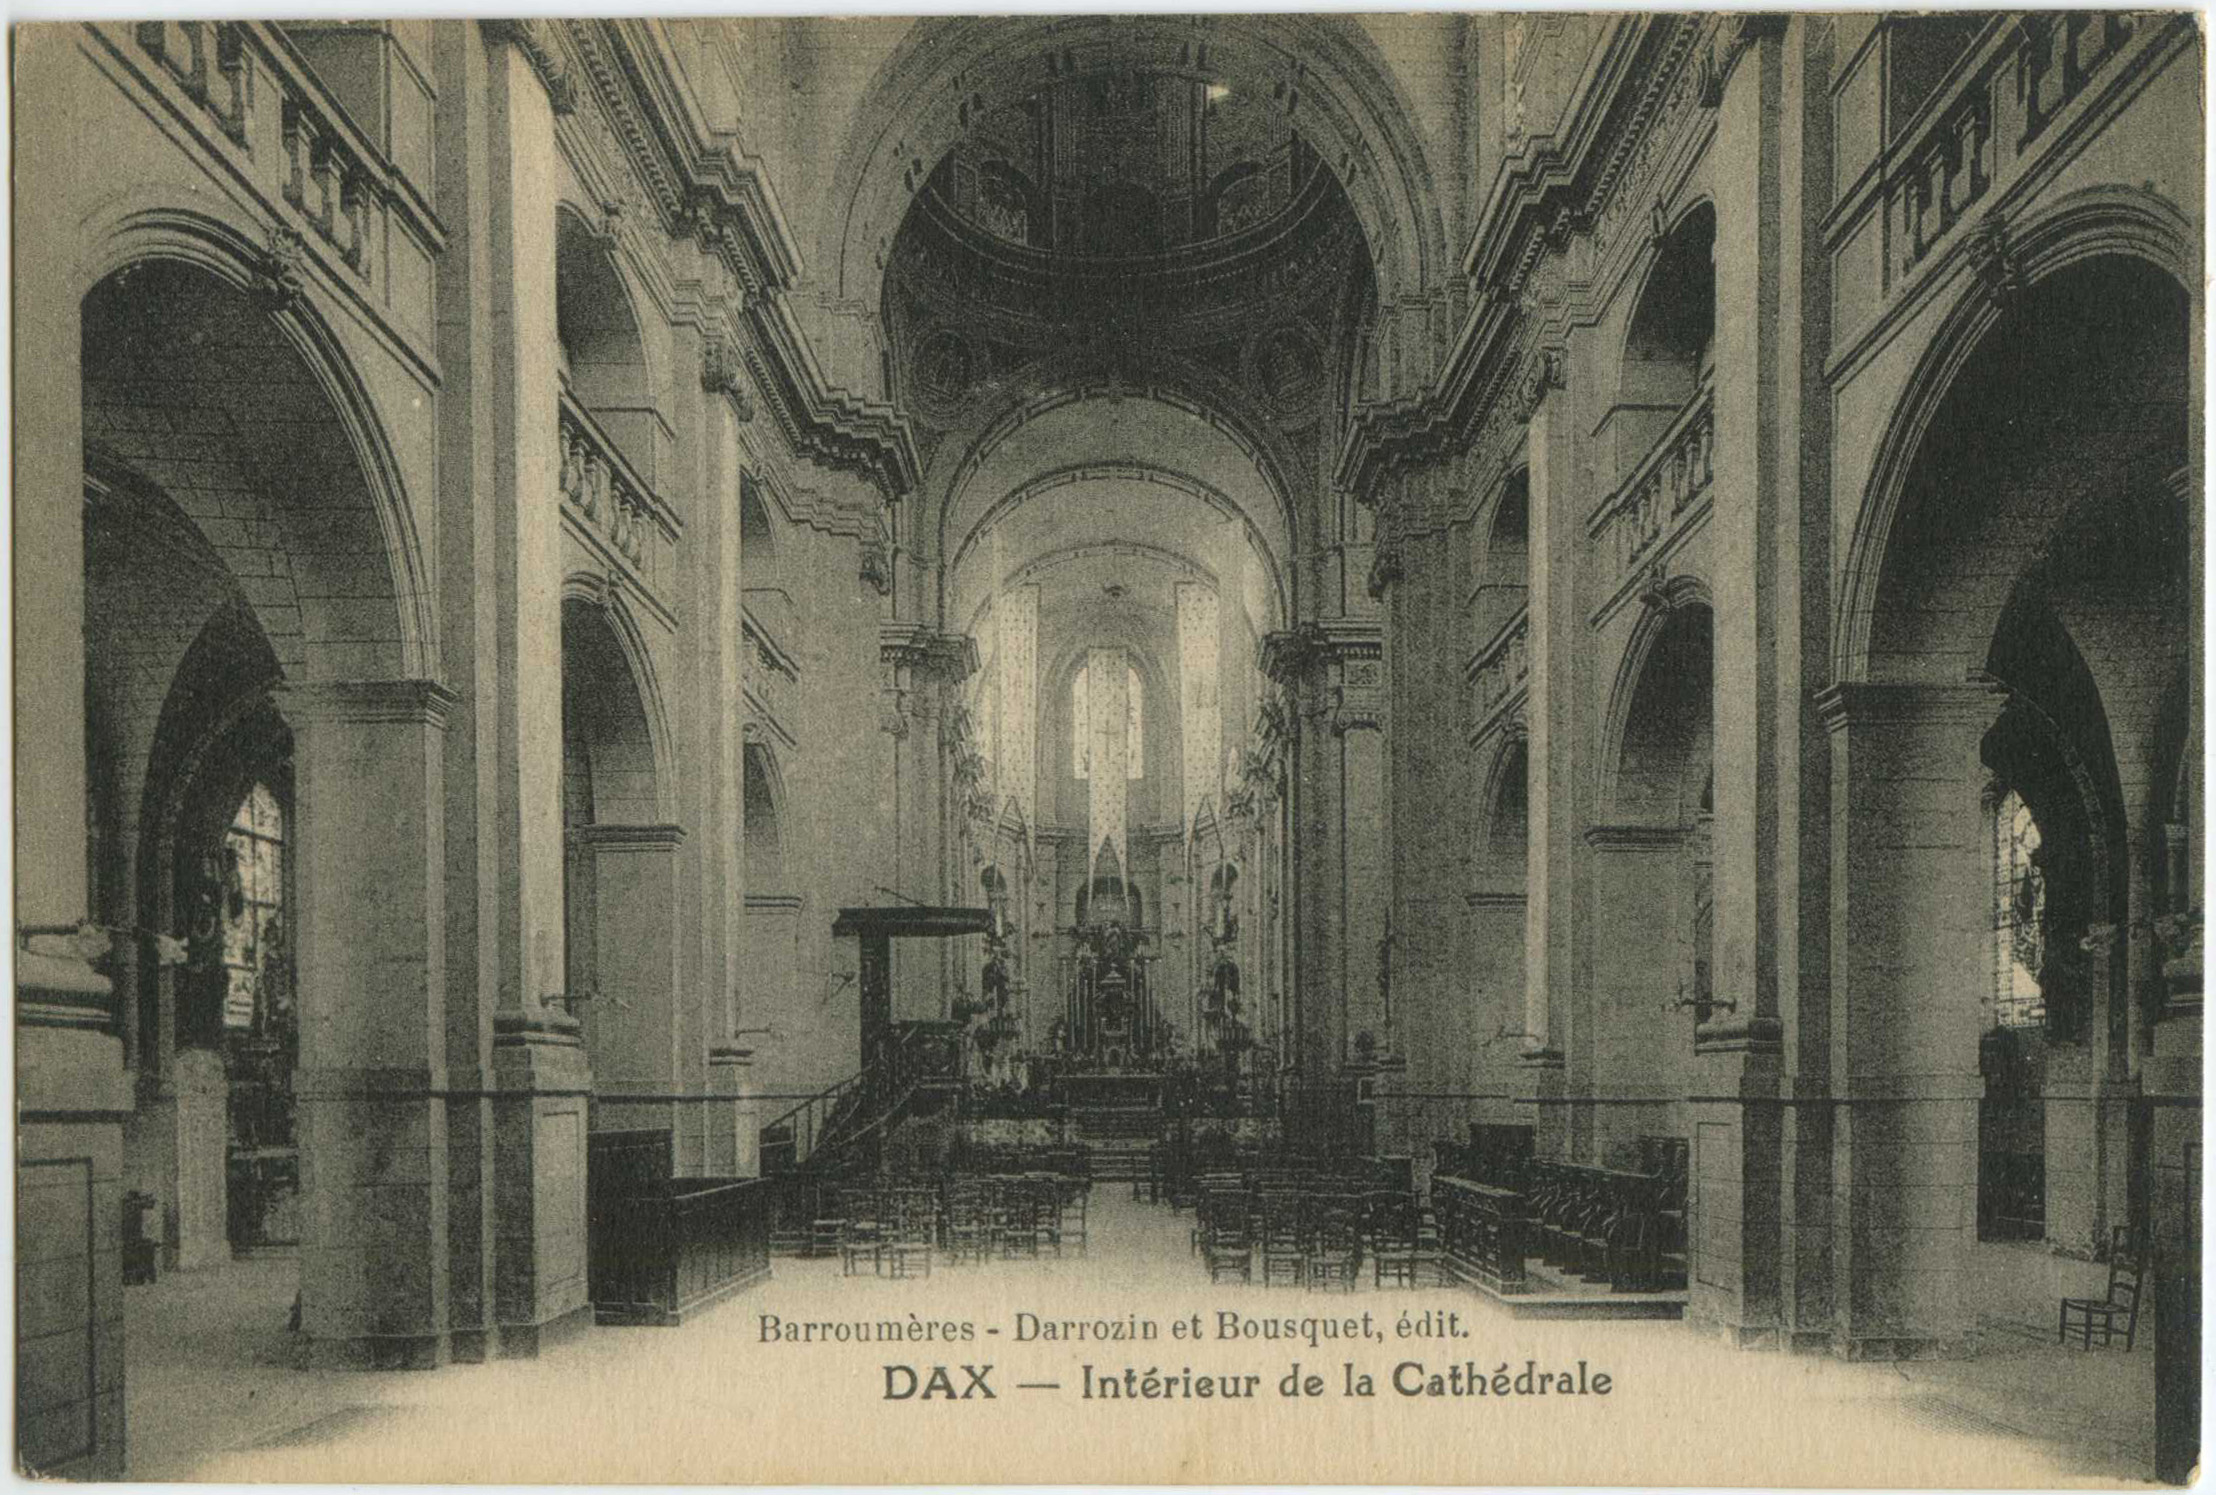 Dax - Intérieur de la Cathédrale